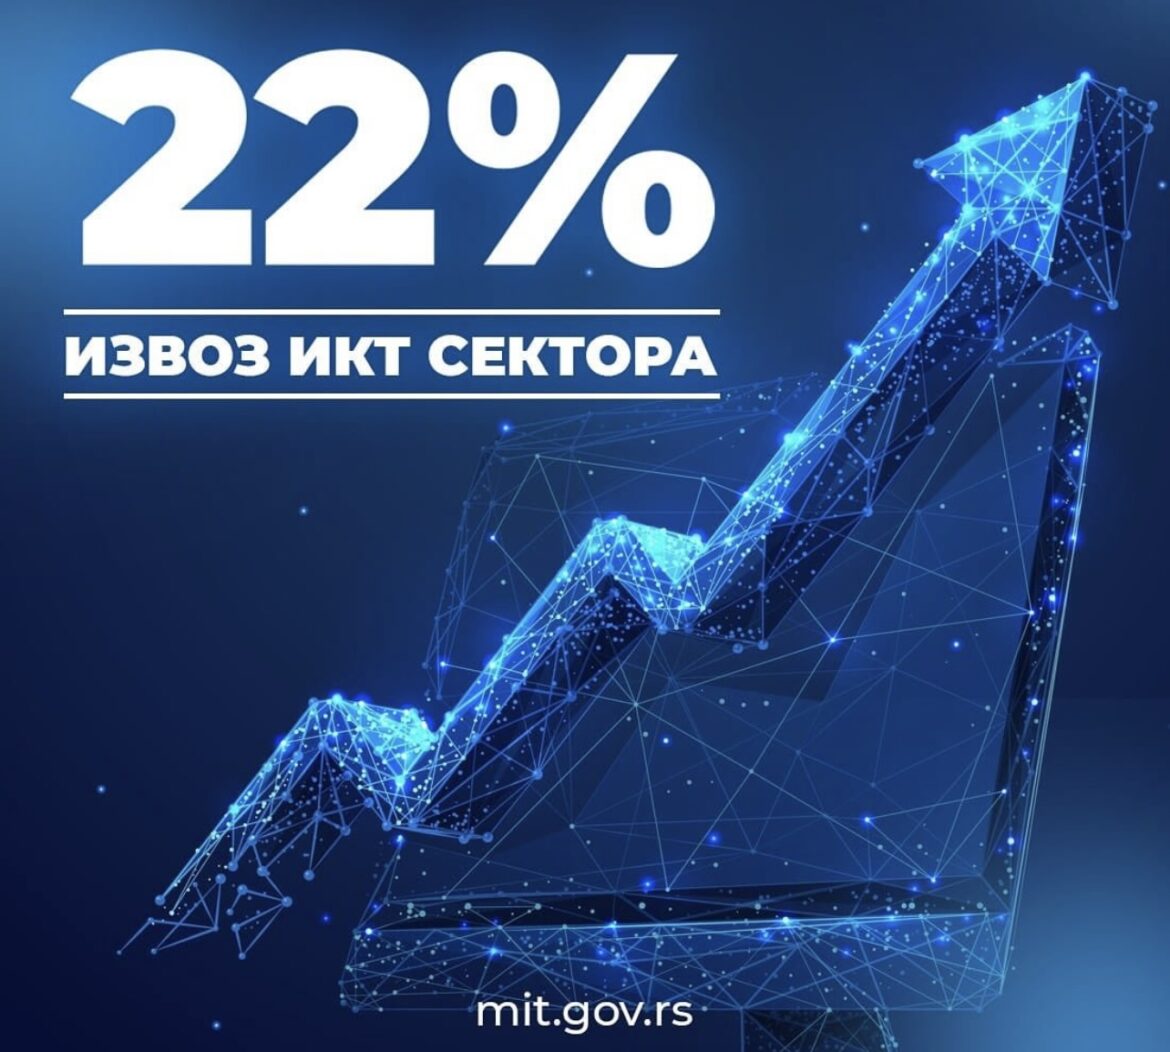 SJAJNE VESTI ZA SRBIJU Narodna banka Srbije objavila najnovije podatke o izvozu IKT sektora, oglasio se ministar Mihailo Jovanović